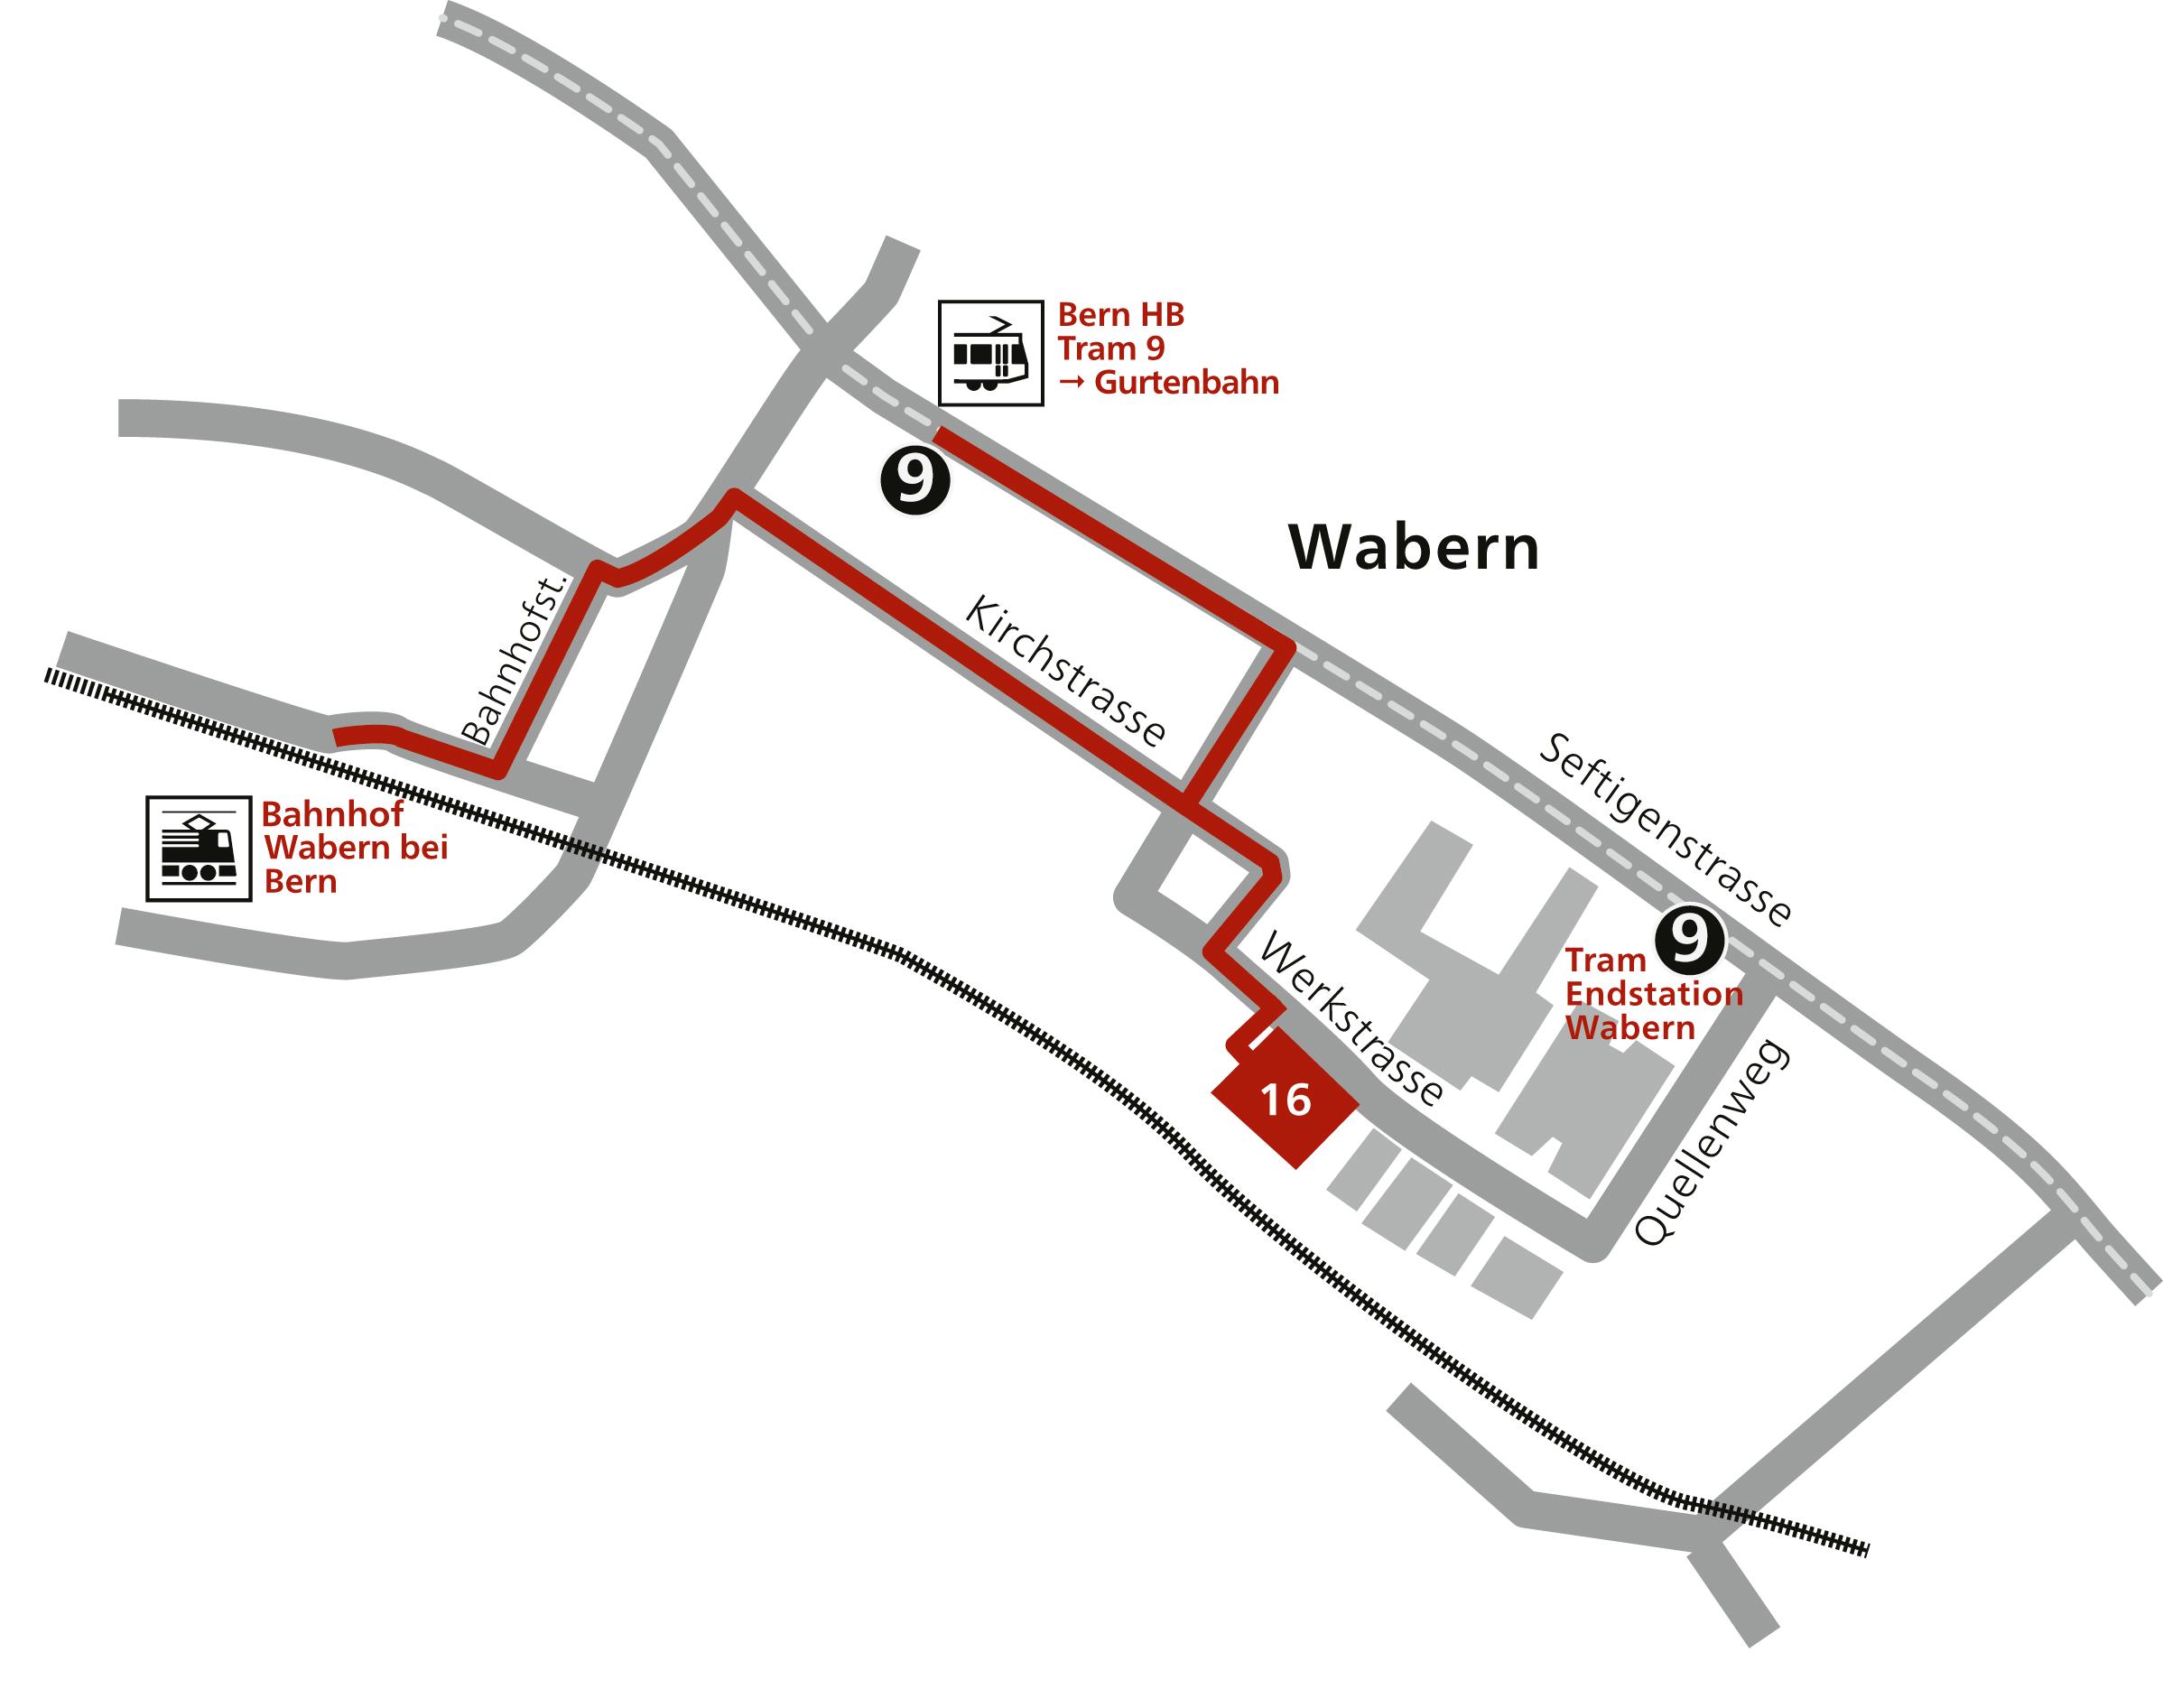 Une carte dessinée indiquant où se trouve le service ambulatoire à Wabern depuis la gare.